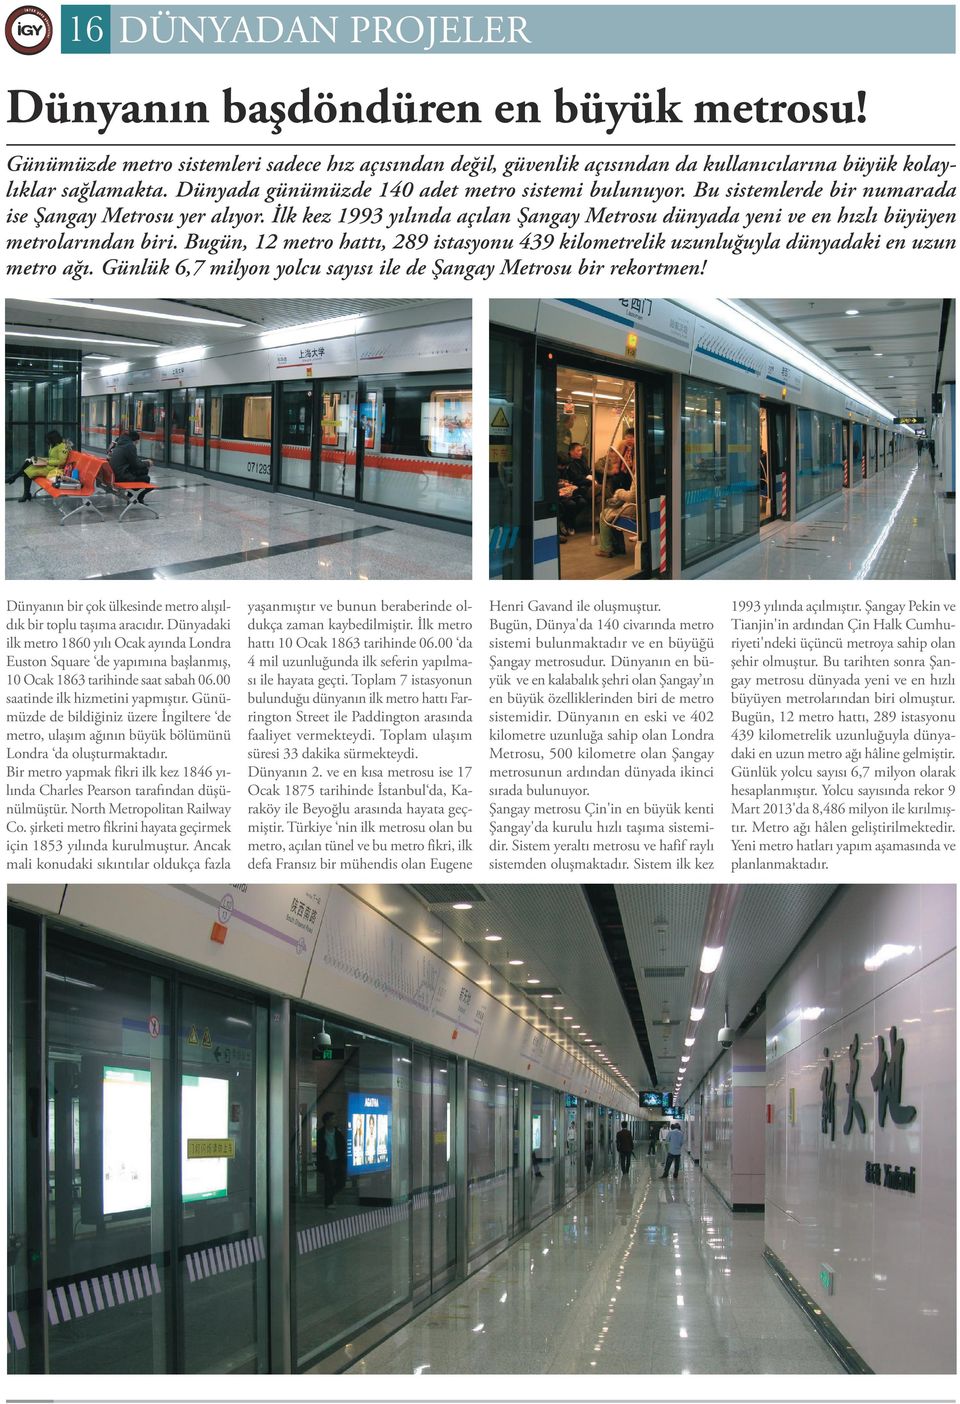 İlk kez 1993 yılında açılan Şangay Metrosu dünyada yeni ve en hızlı büyüyen metrolarından biri. Bugün, 12 metro hattı, 289 istasyonu 439 kilometrelik uzunluğuyla dünyadaki en uzun metro ağı.